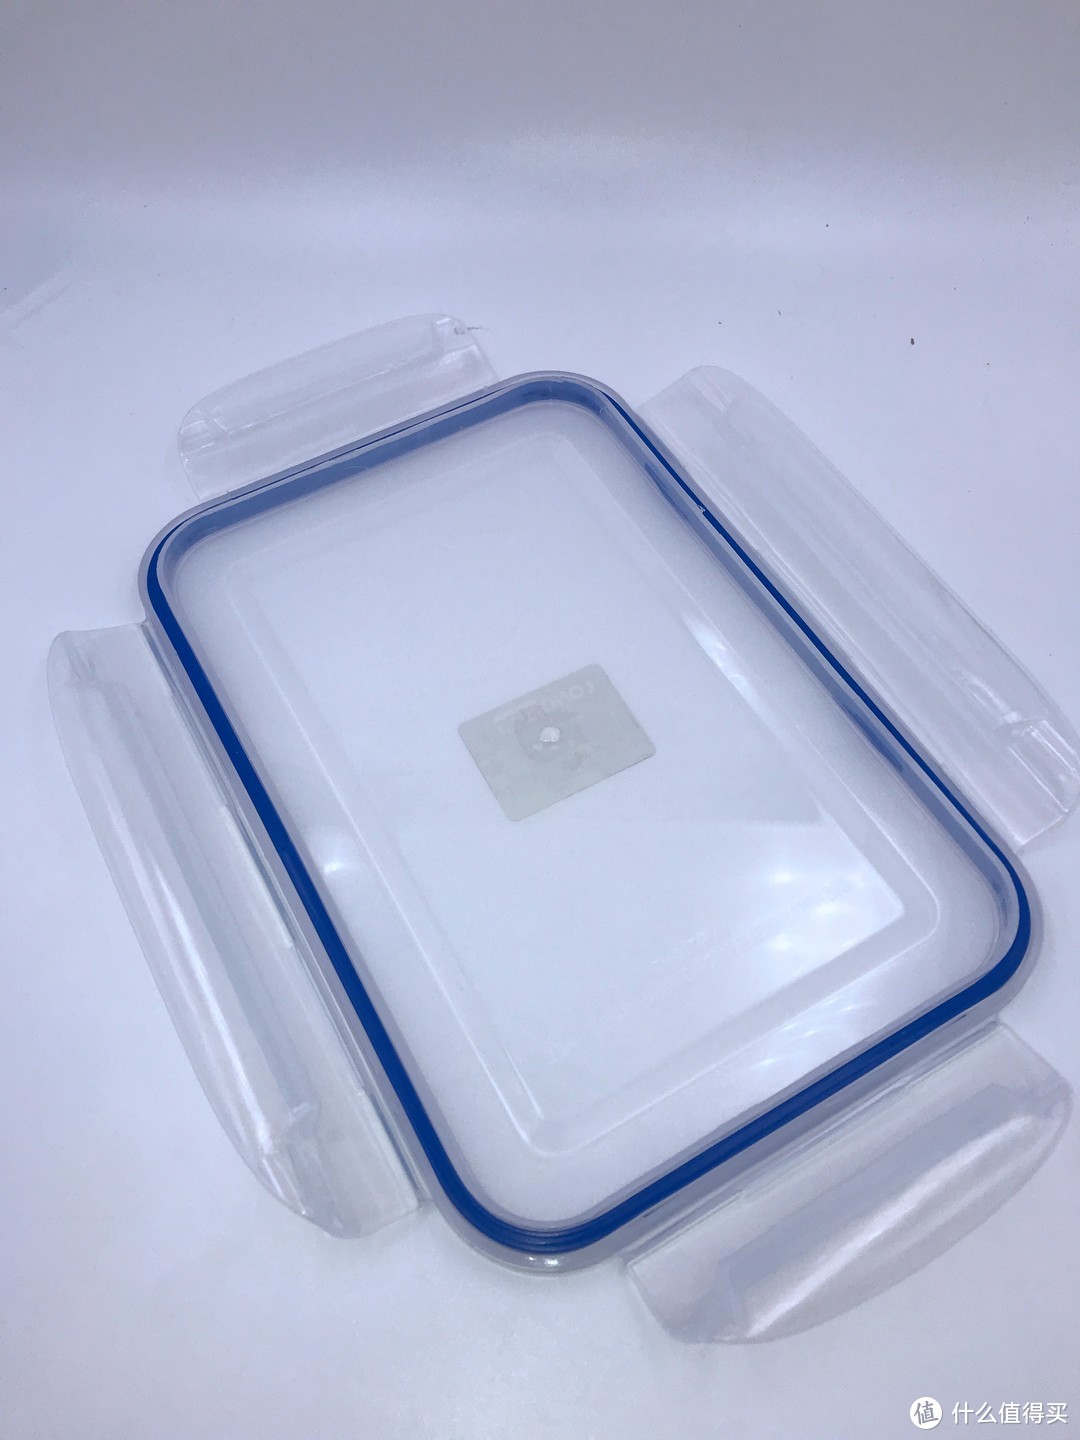 我的万能饭盒—LONGSTAR 龙士达 2.5L 微波炉饭盒保鲜盒 开箱简评